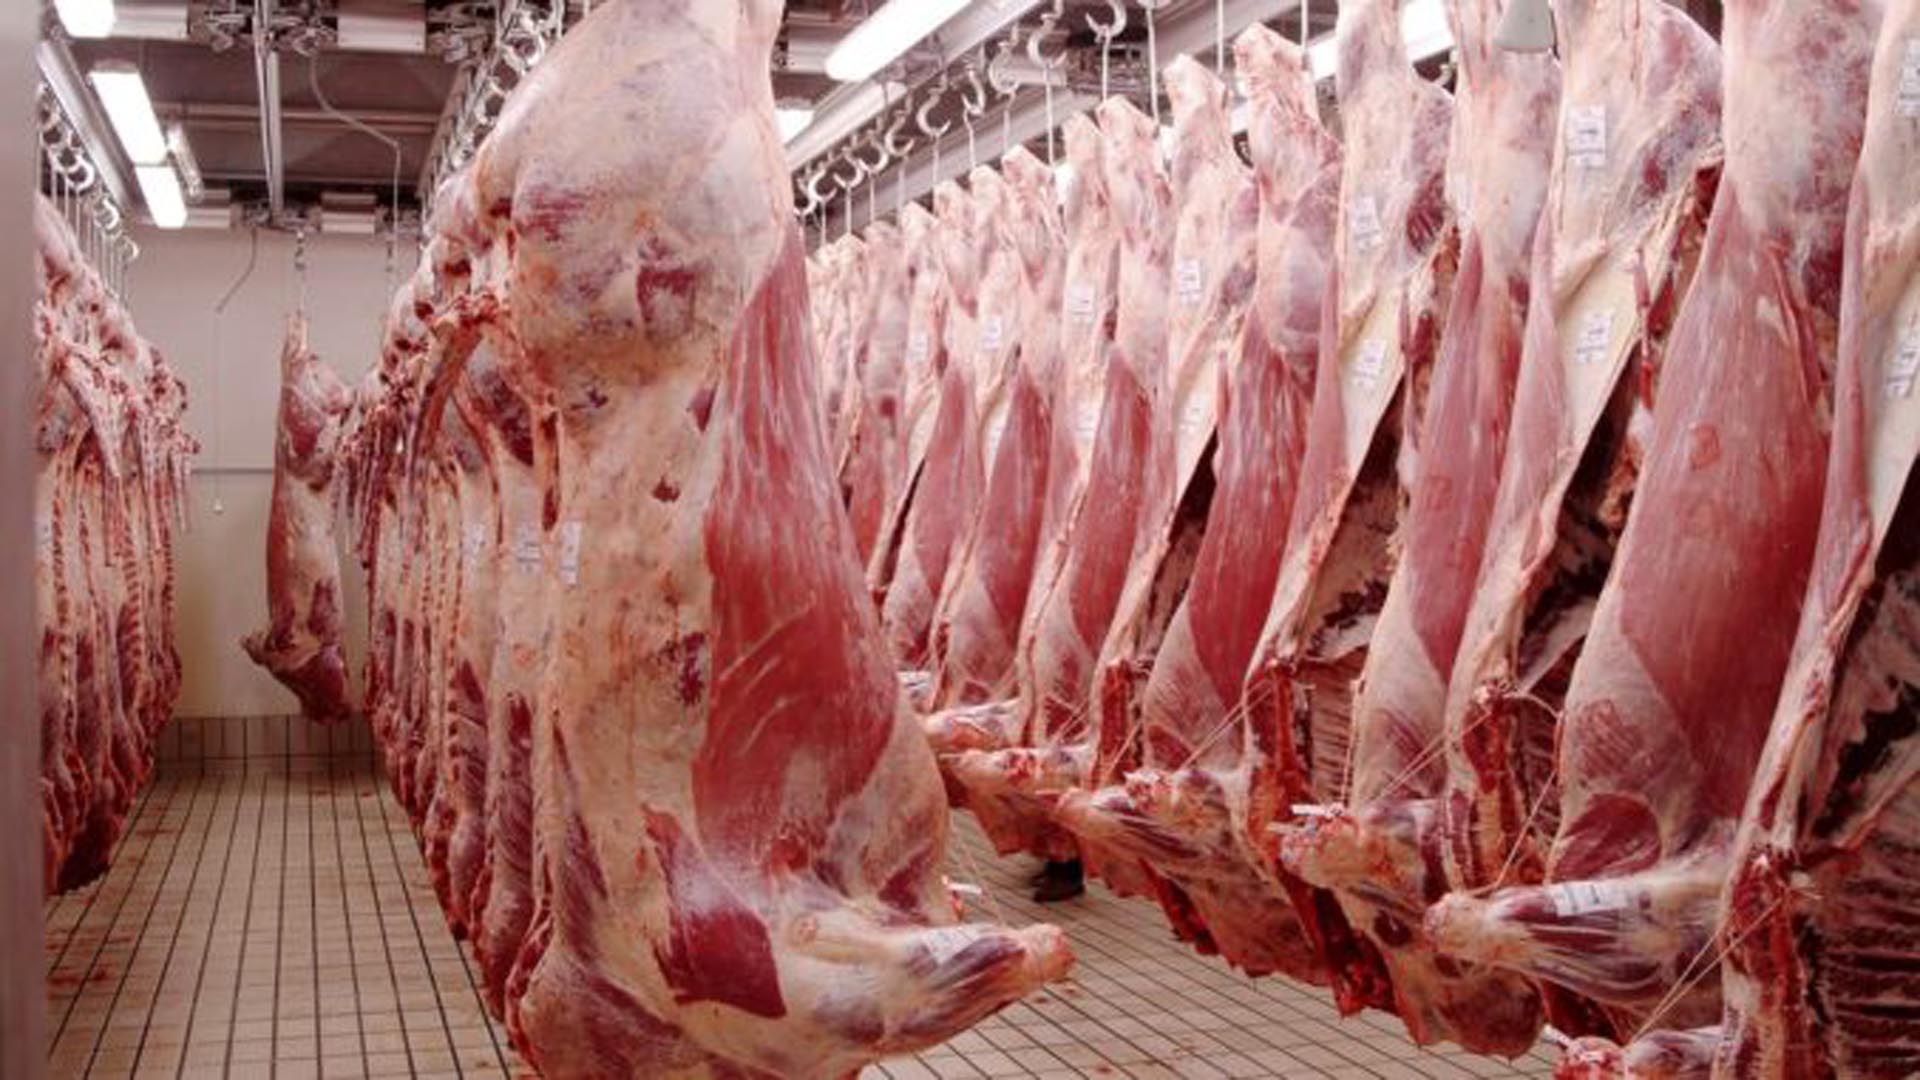 En marzo pasado se registró un nuevo récord de exportaciones de carne vacuna